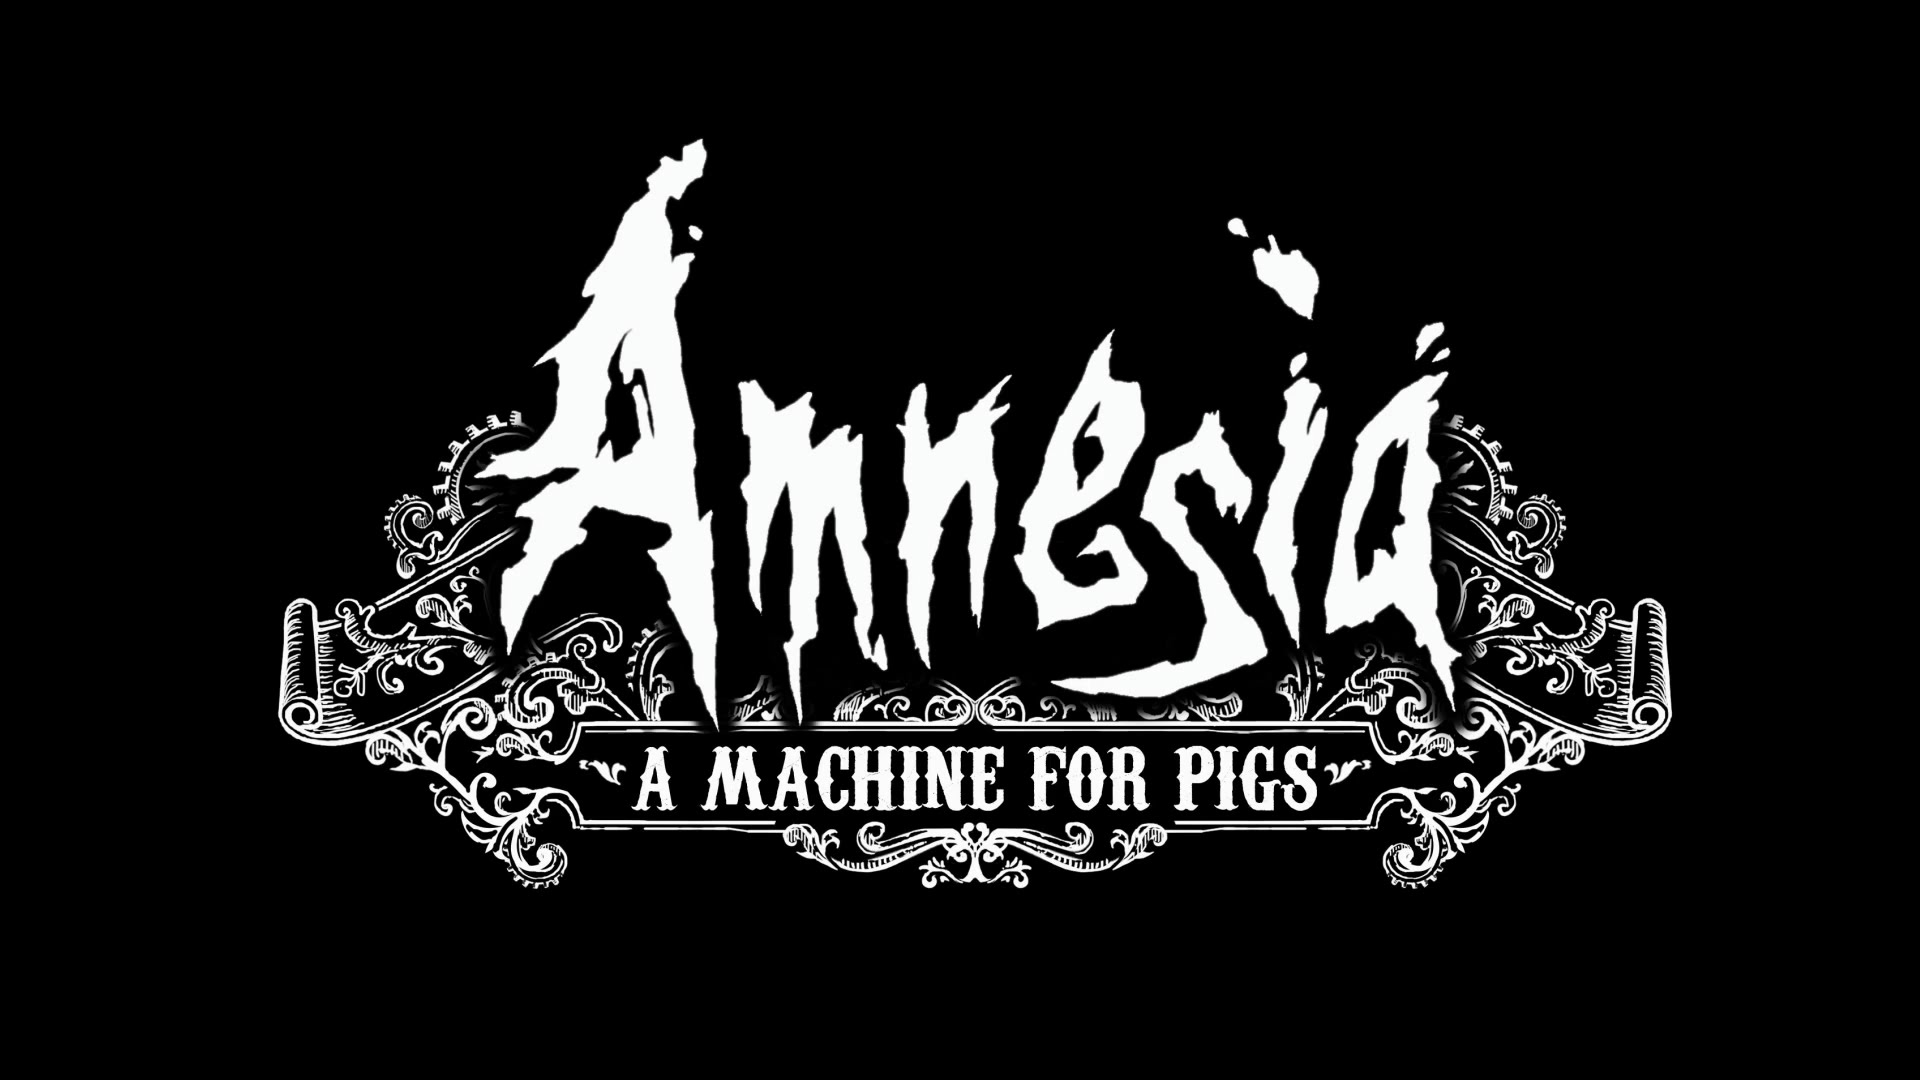 El sopar dels porcs. Amnesia: A machine for pigs #11 de Xavalma